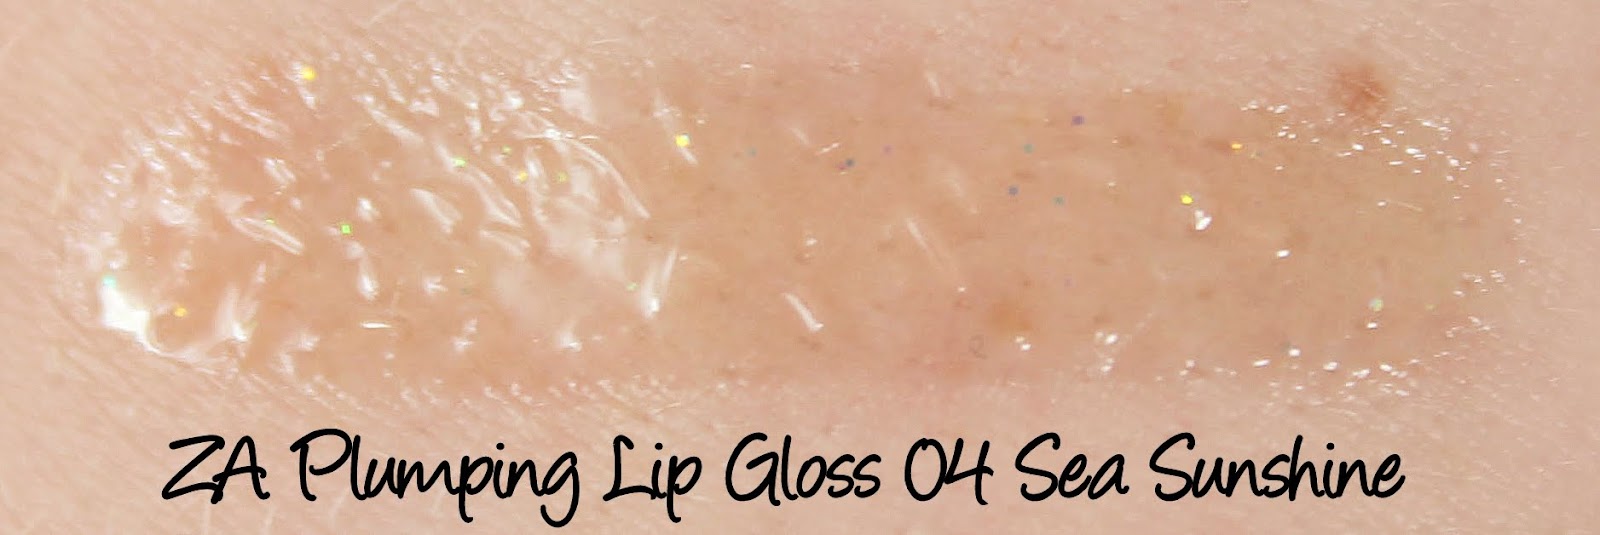 ZA Plumping Lip Gloss 04 Sea Sunshine swatch & review